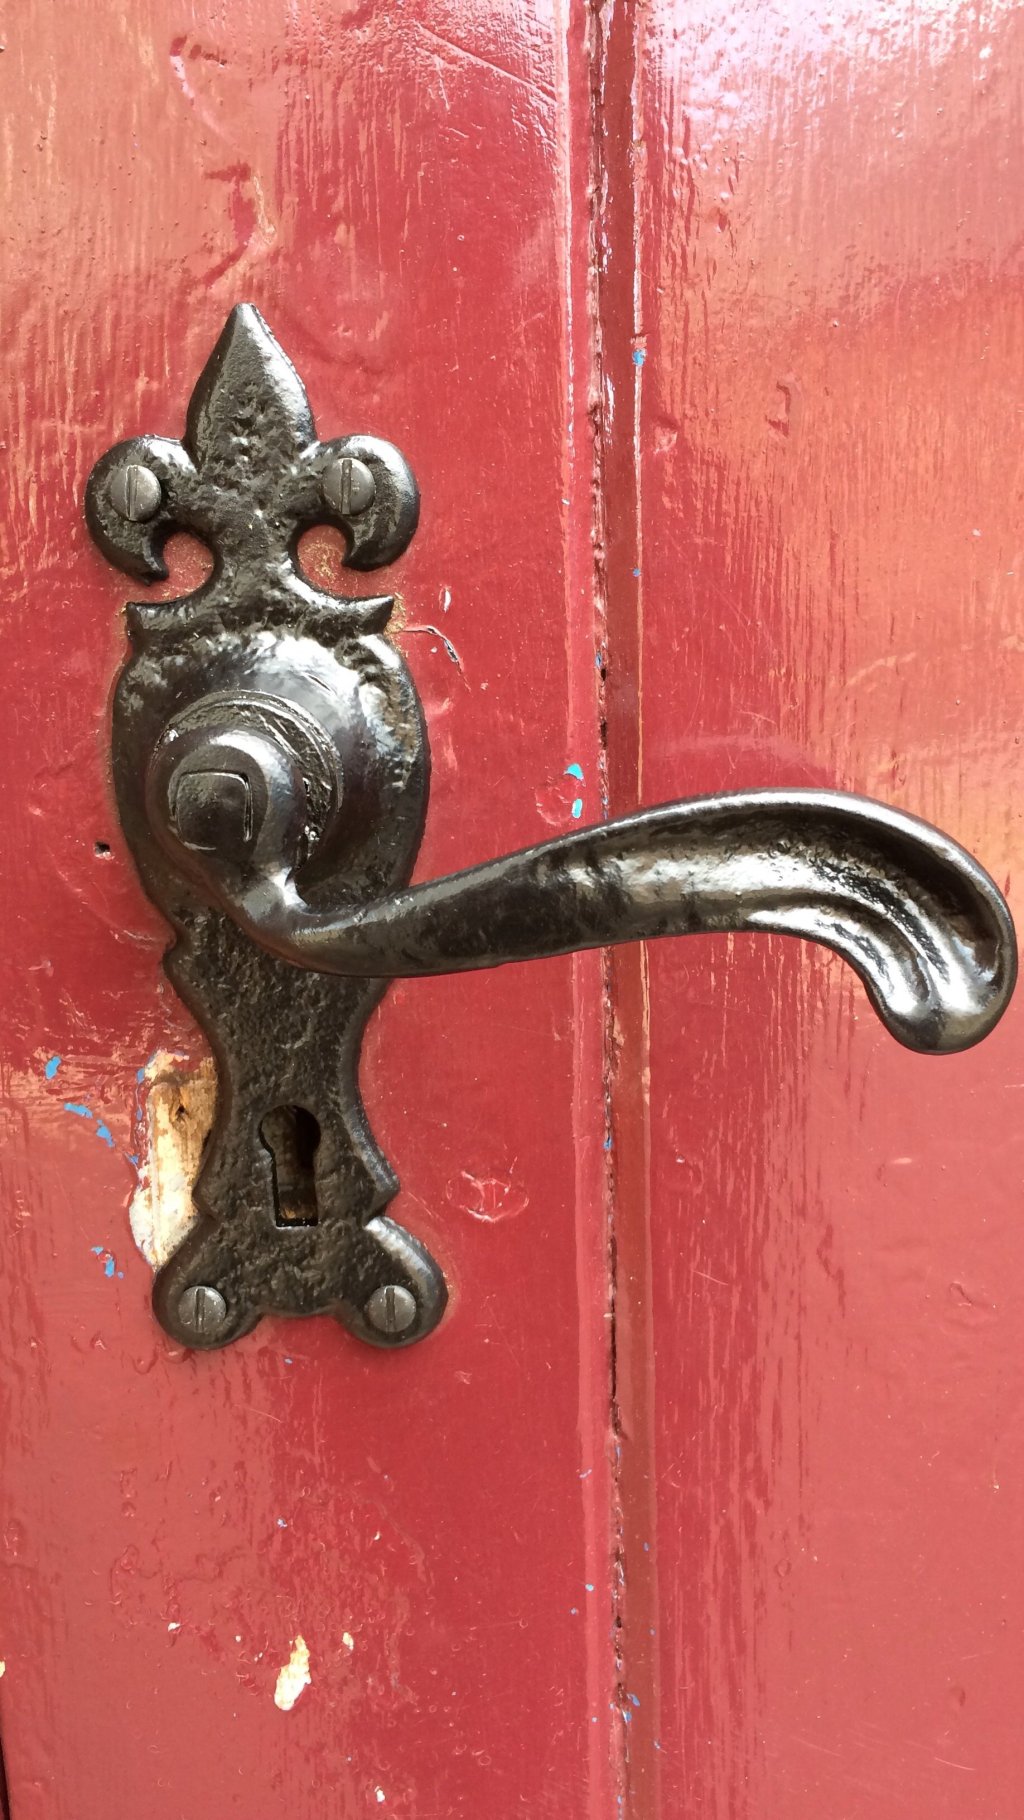 Replacement Door Handle in Holbeach Hurn.